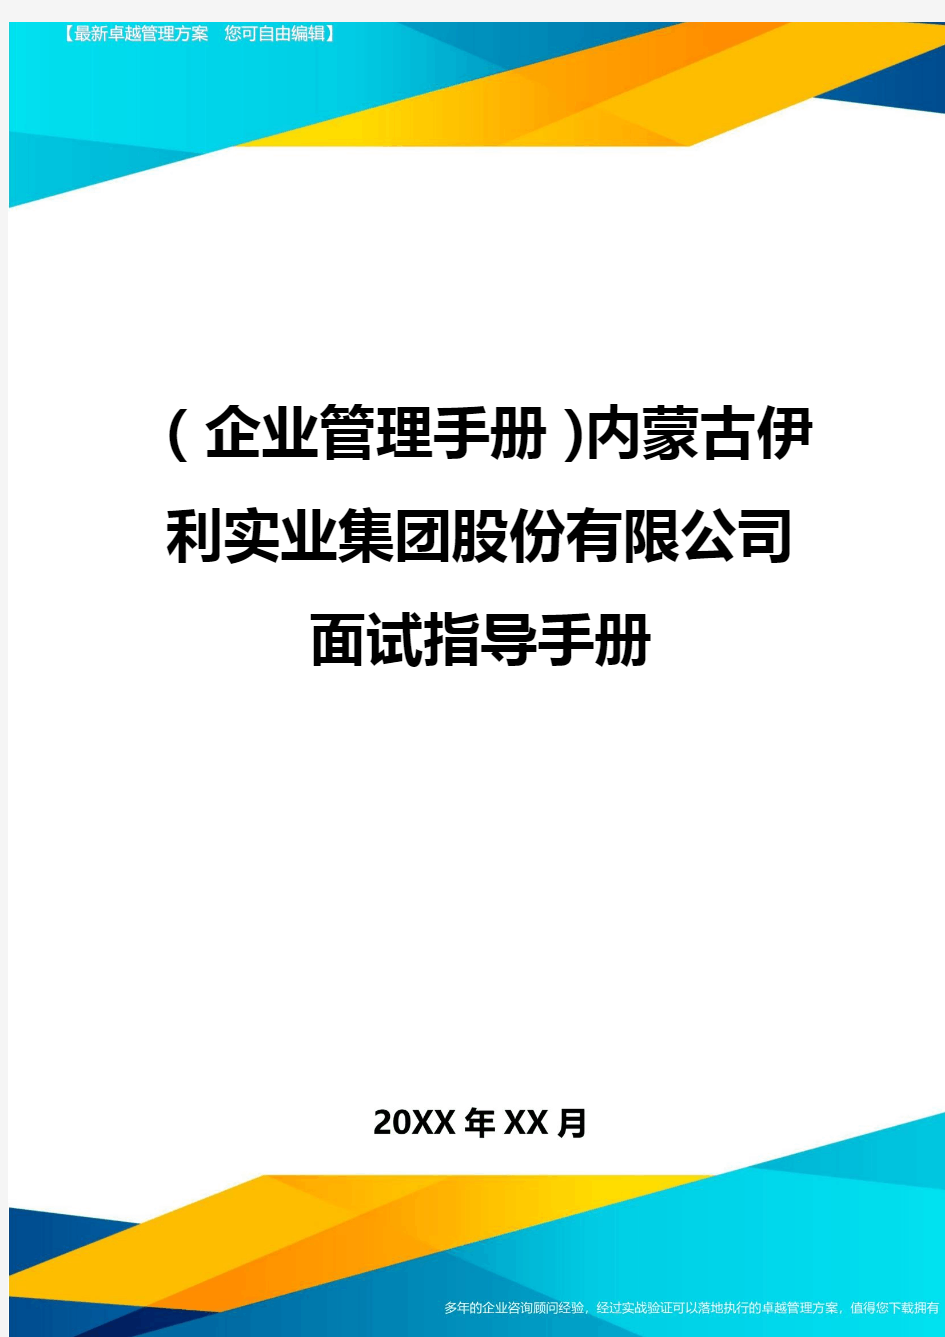 (企业管理手册)内蒙古伊利实业集团股份有限公司面试指导手册